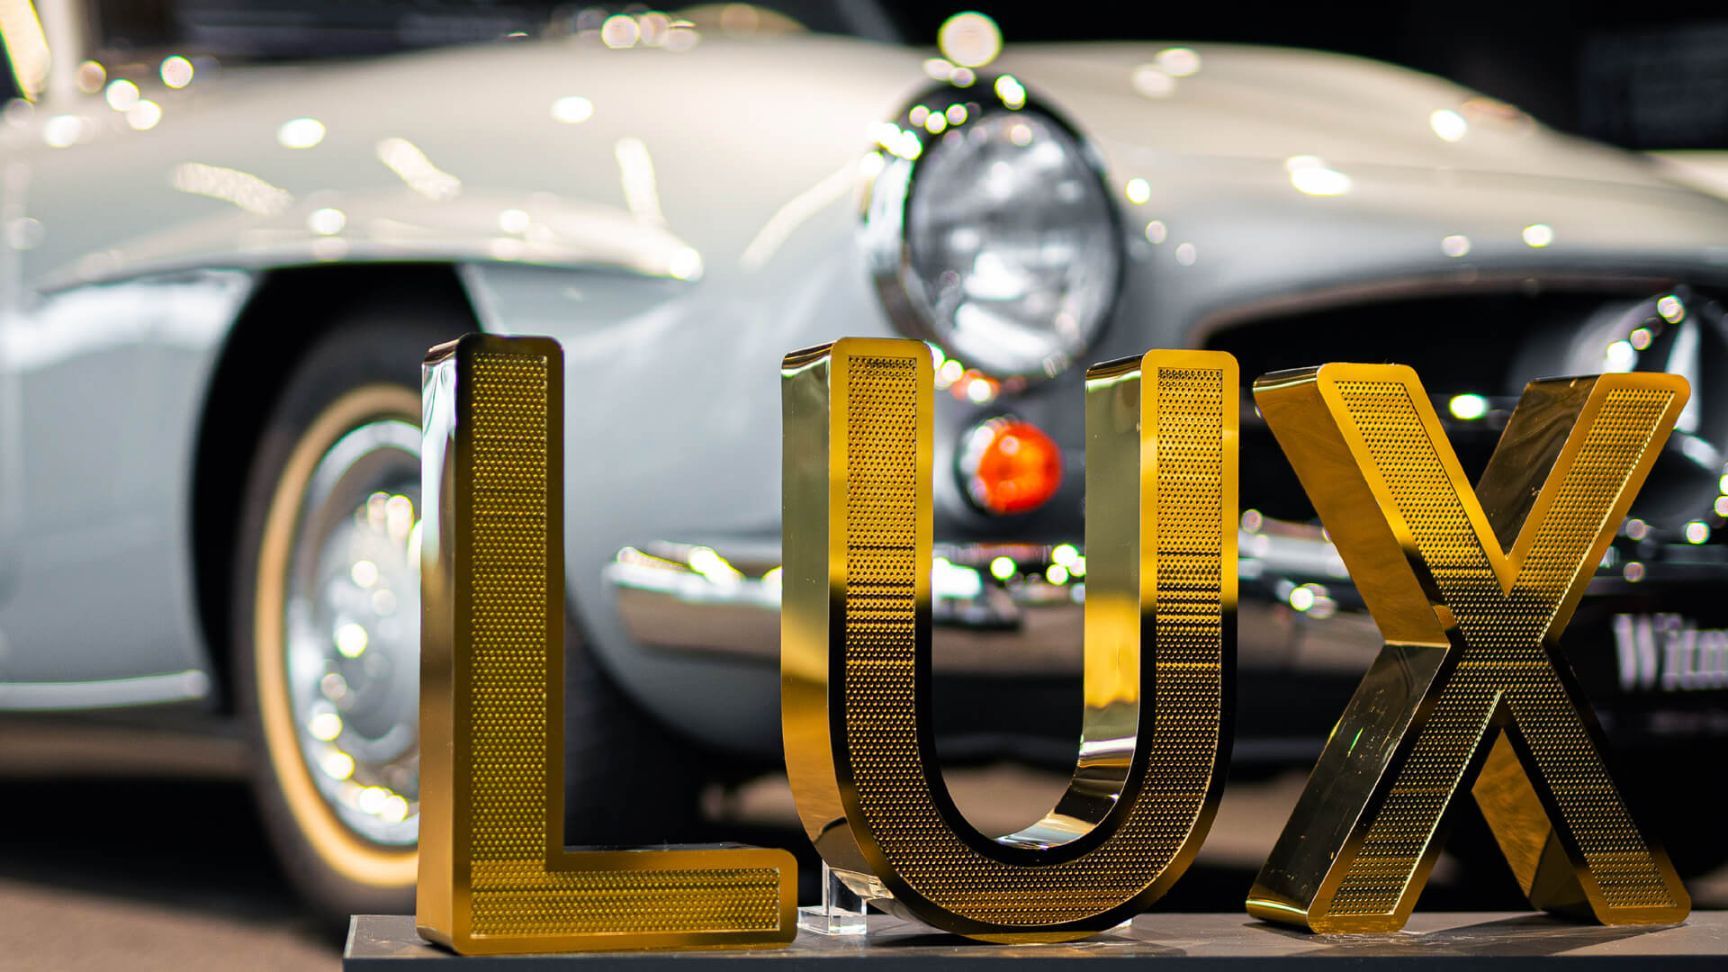 Lettere in acciaio inox perforato LUX - Lettere LUX in acciaio inox traforato lucido oro, nello showroom Mercedes